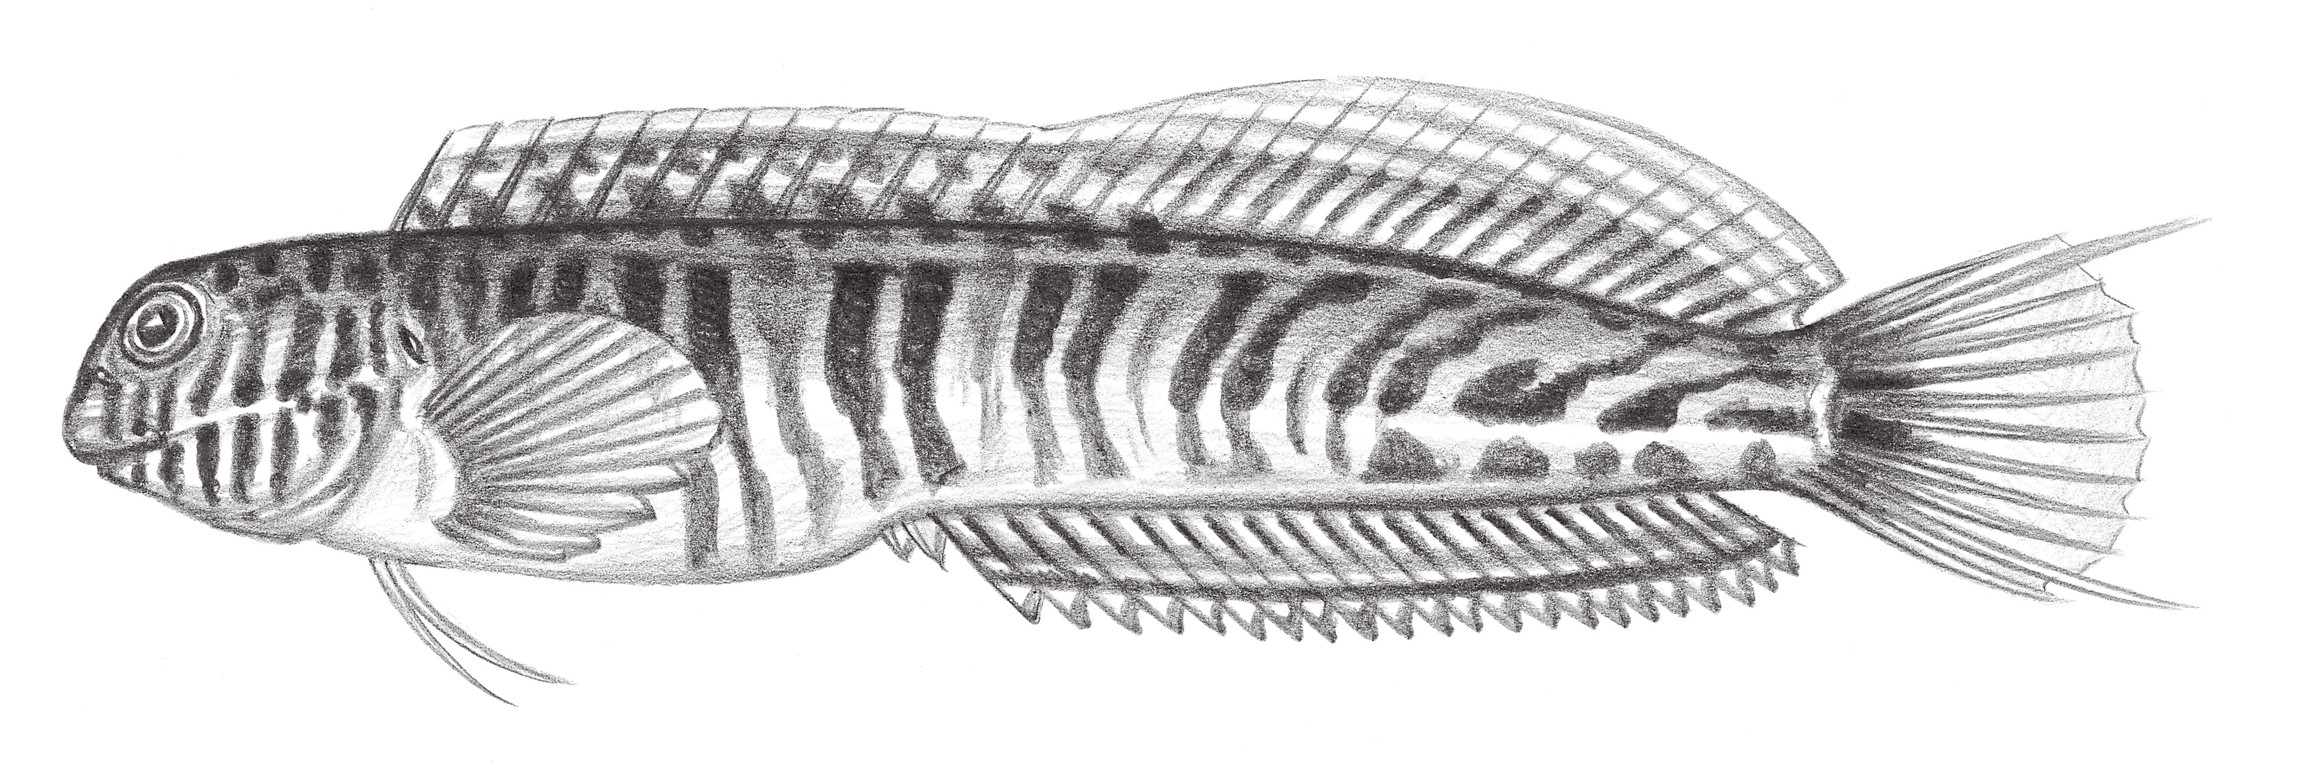 1983.	吉氏肩鰓鳚 Omobranchus germaini (Sauvage, 1883)